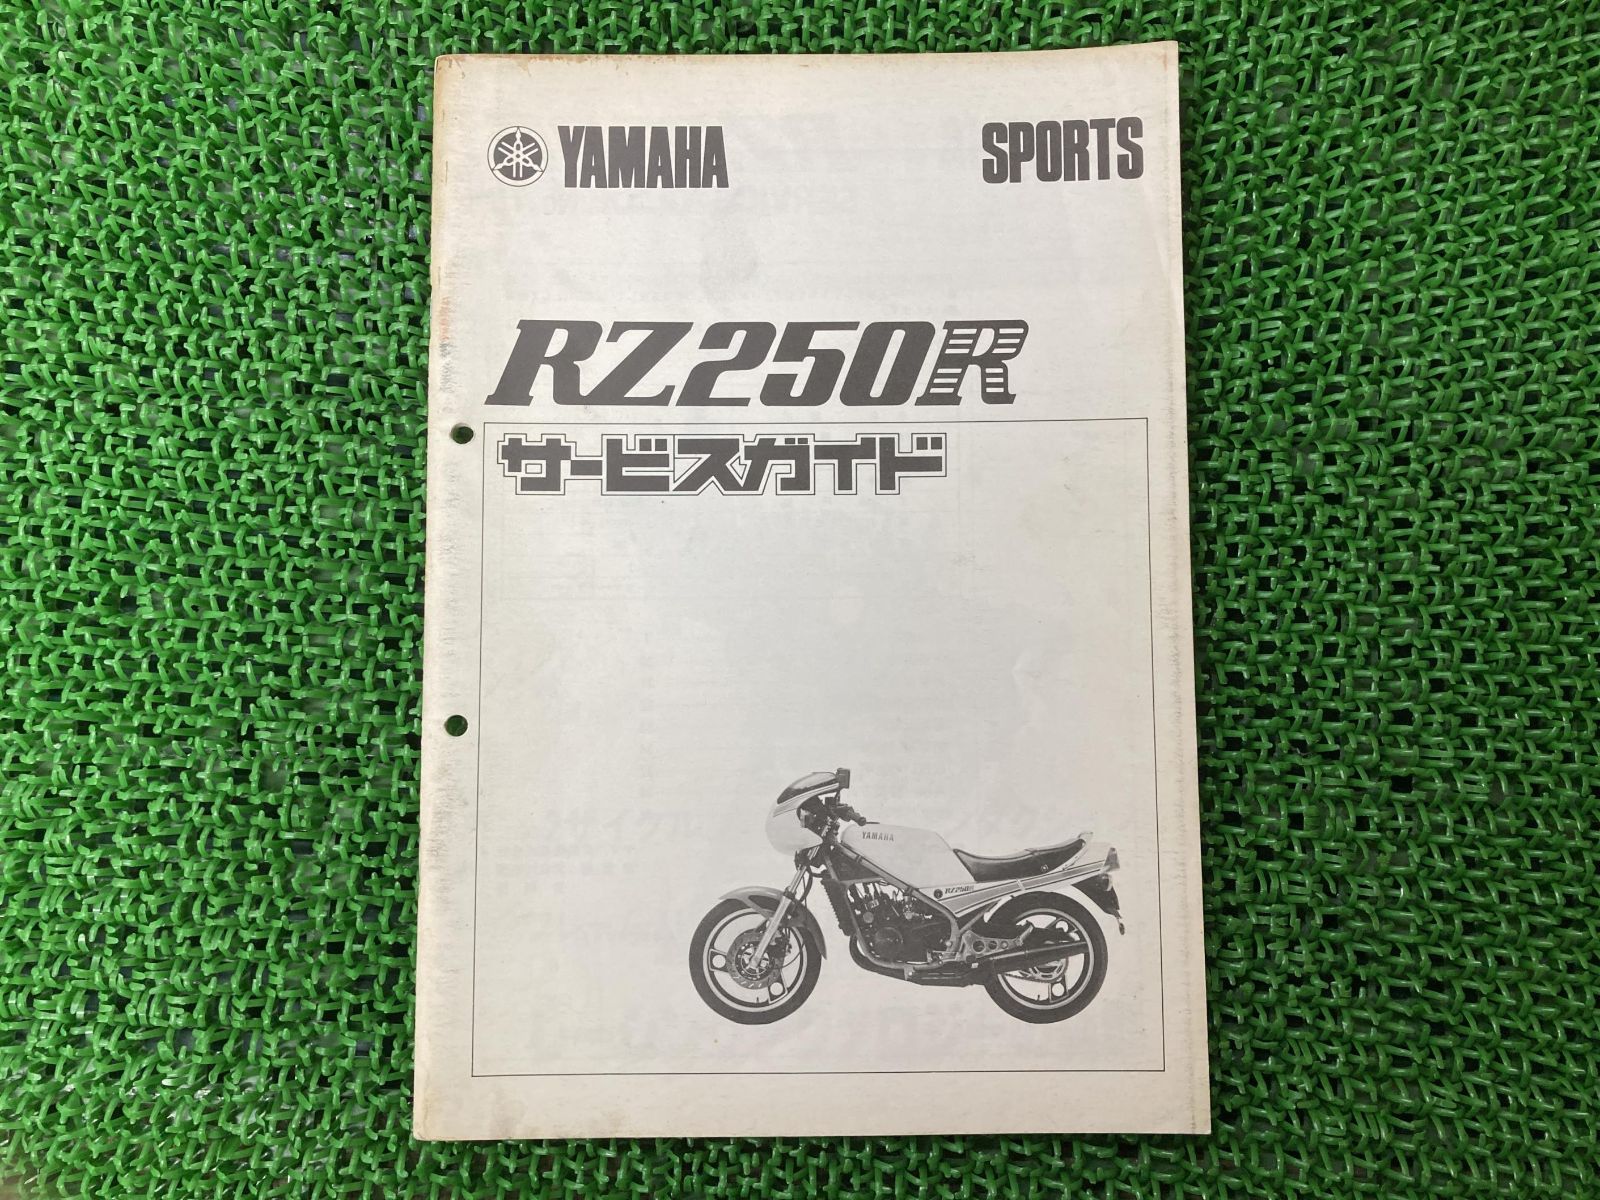 ヤマハ RZ250R サービスマニュアル - カタログ